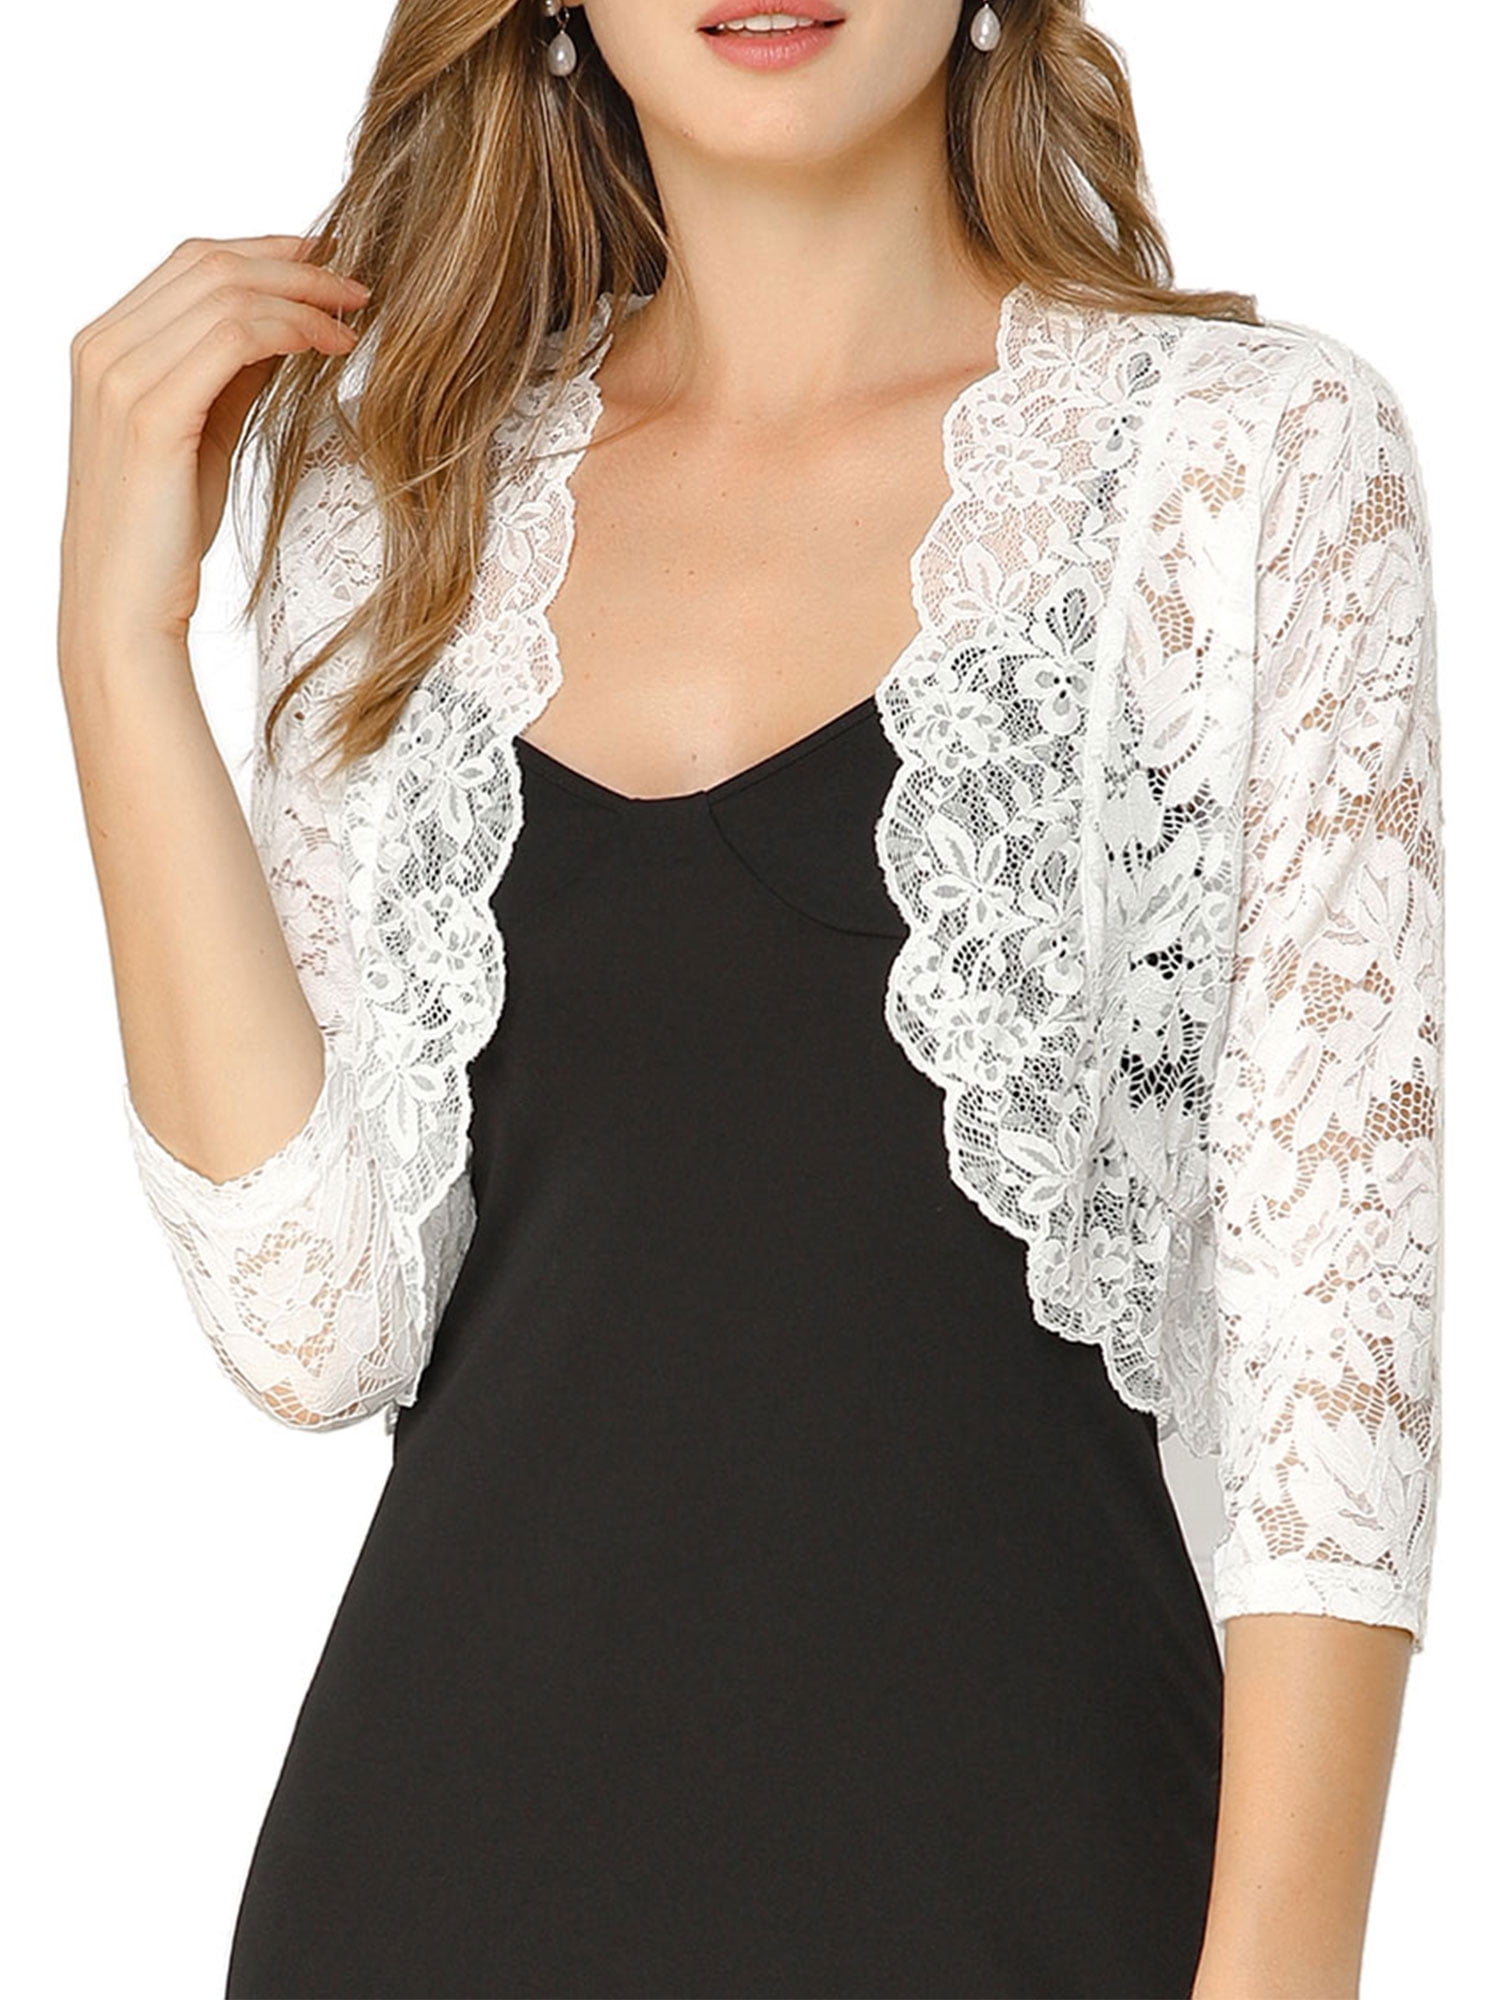 capped sleeve bolero jacket in size UK 8-18 Womens Ivory lace button back